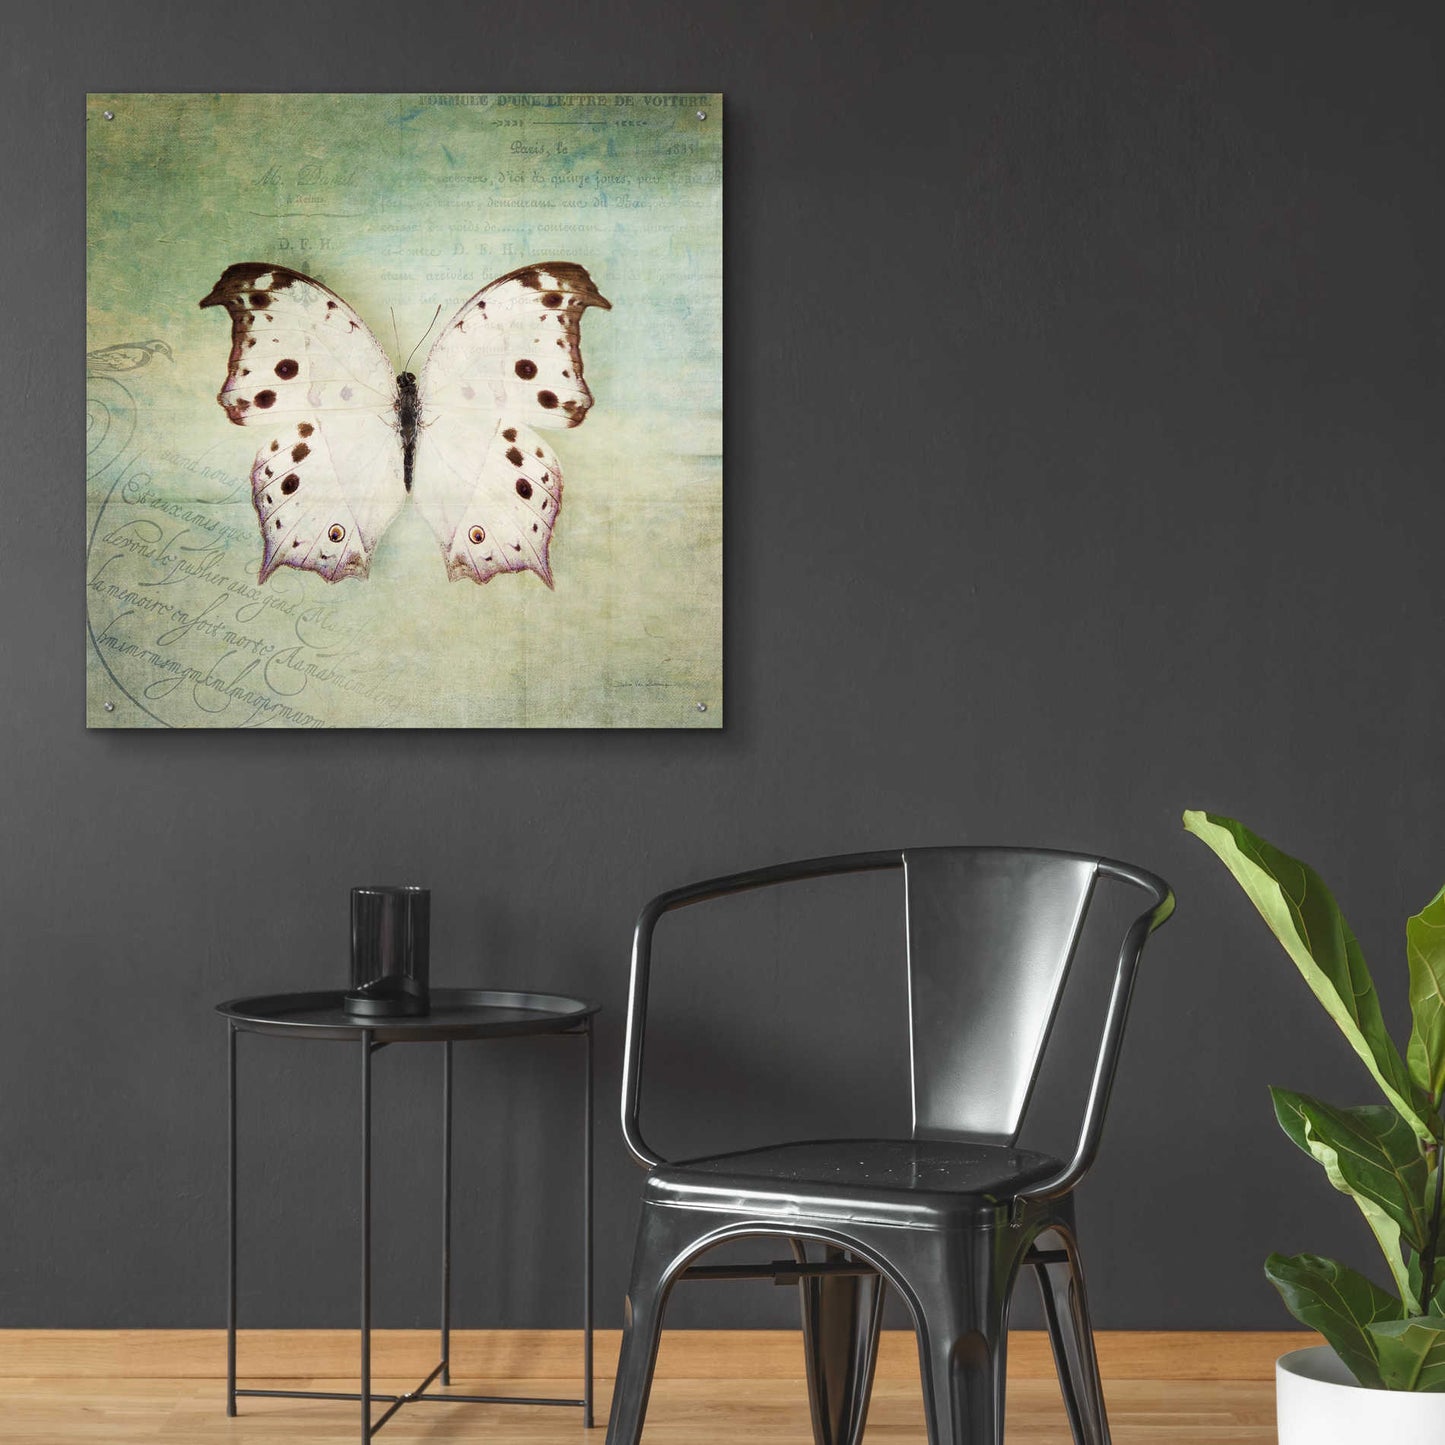 Epic Art 'French Butterfly IV' by Debra Van Swearingen, Acrylic Glass Wall Art,36x36